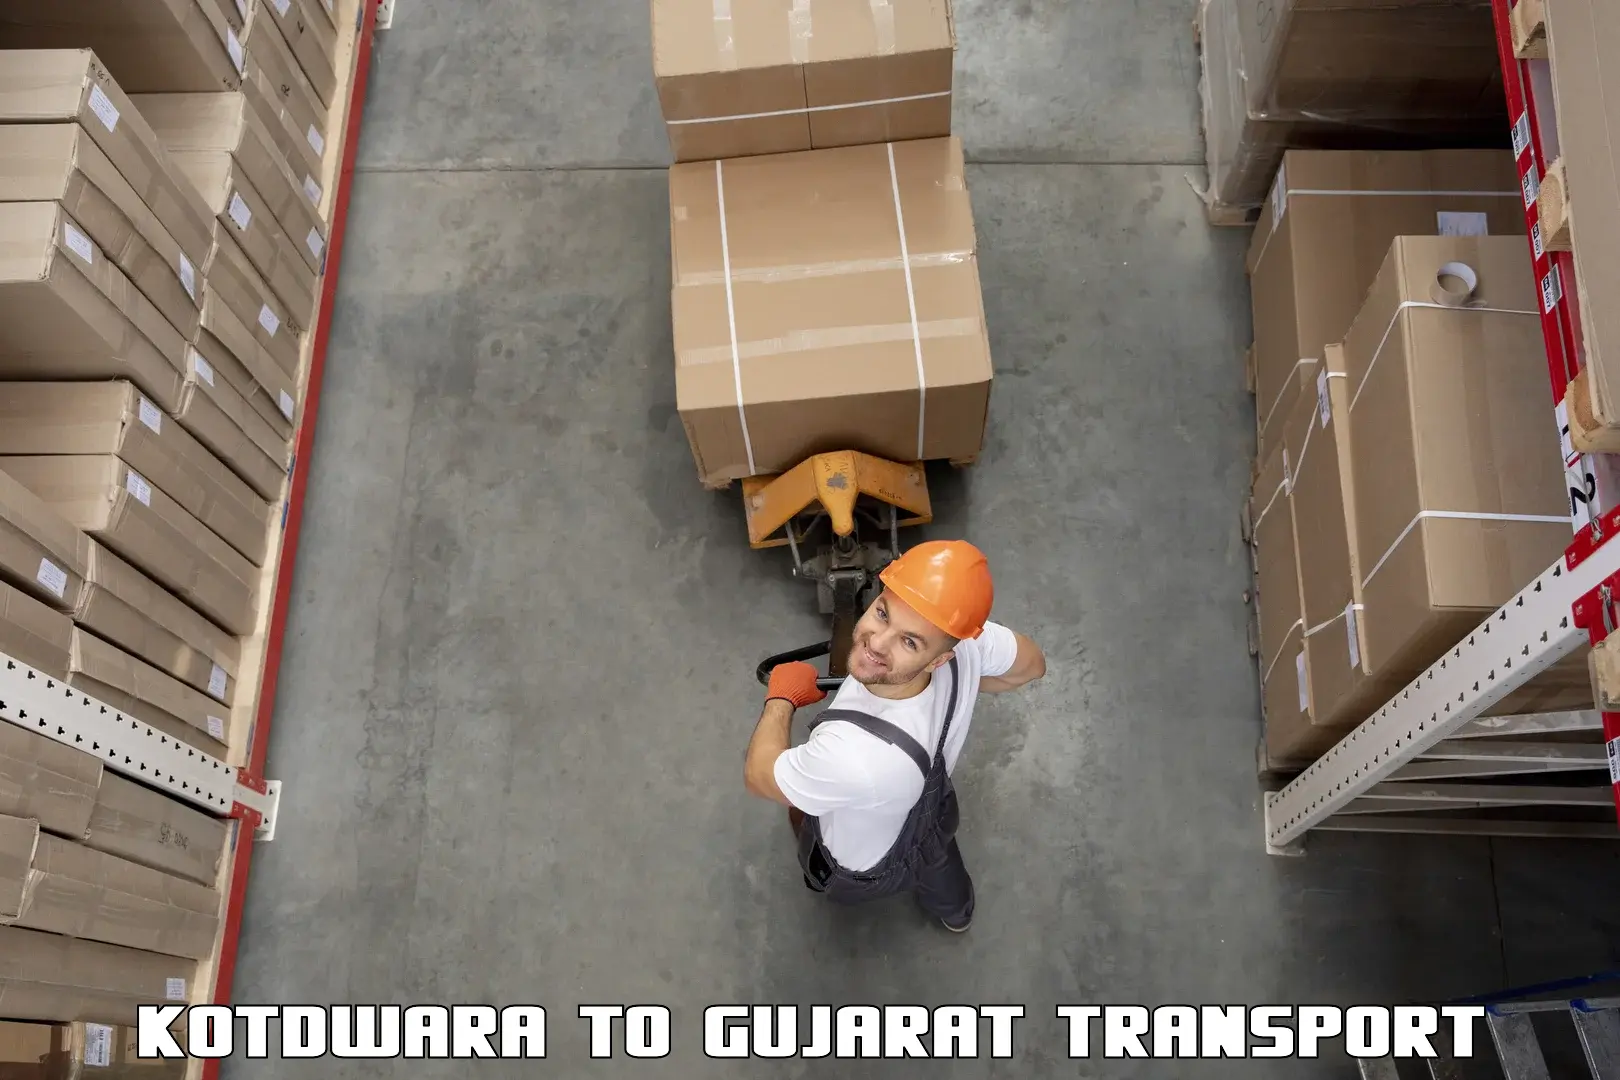 Daily transport service Kotdwara to Surat